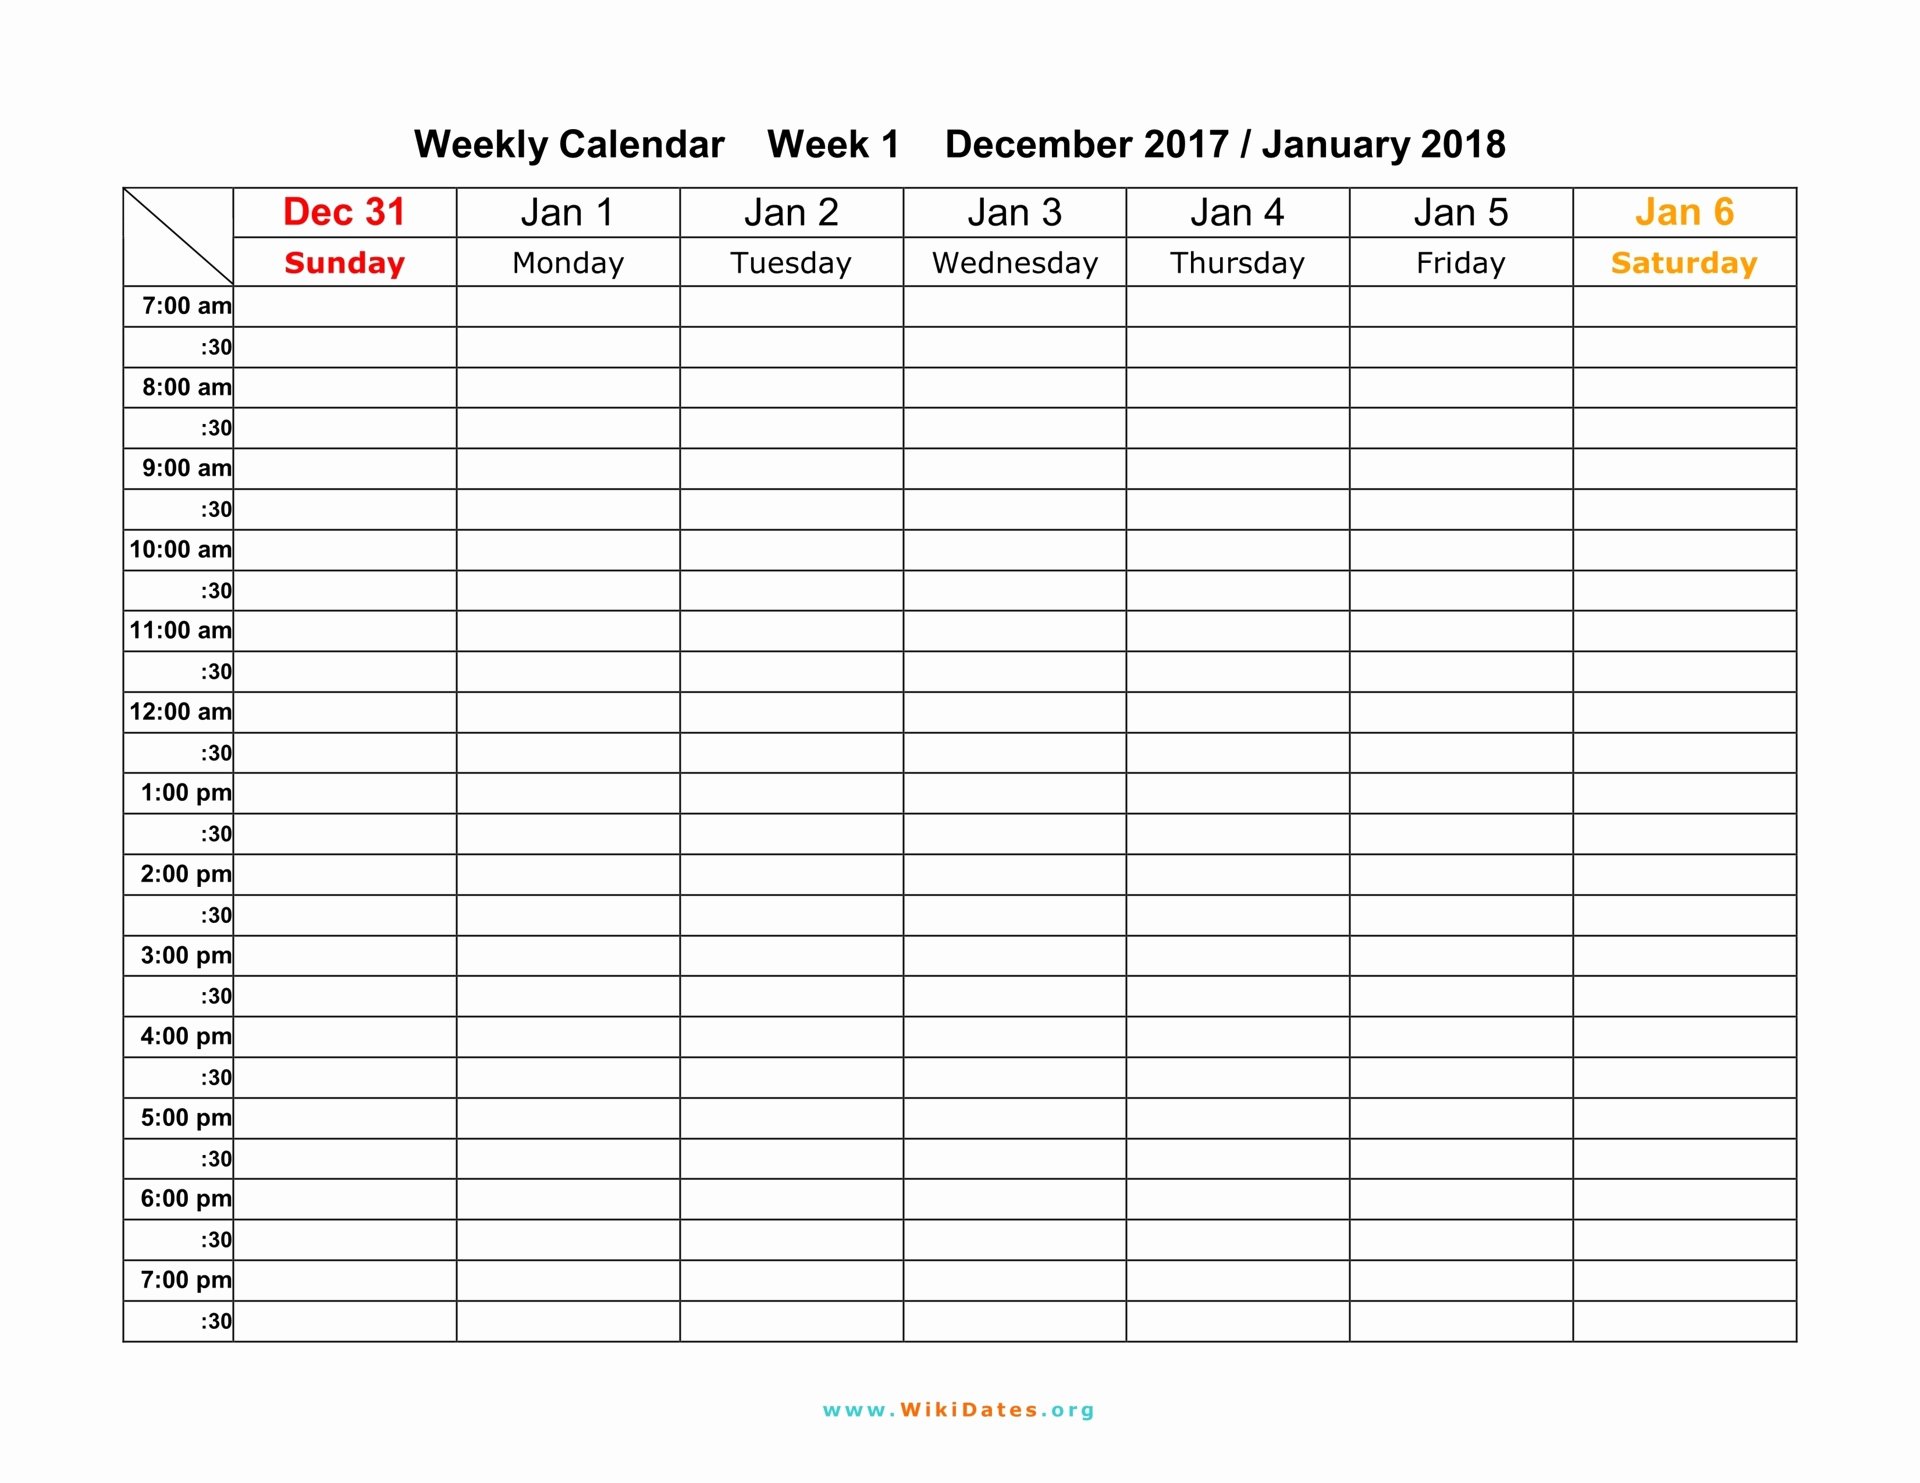 Work Week Schedule Template Best Of Weekly Calendar Download Weekly Calendar 2017 and 2018